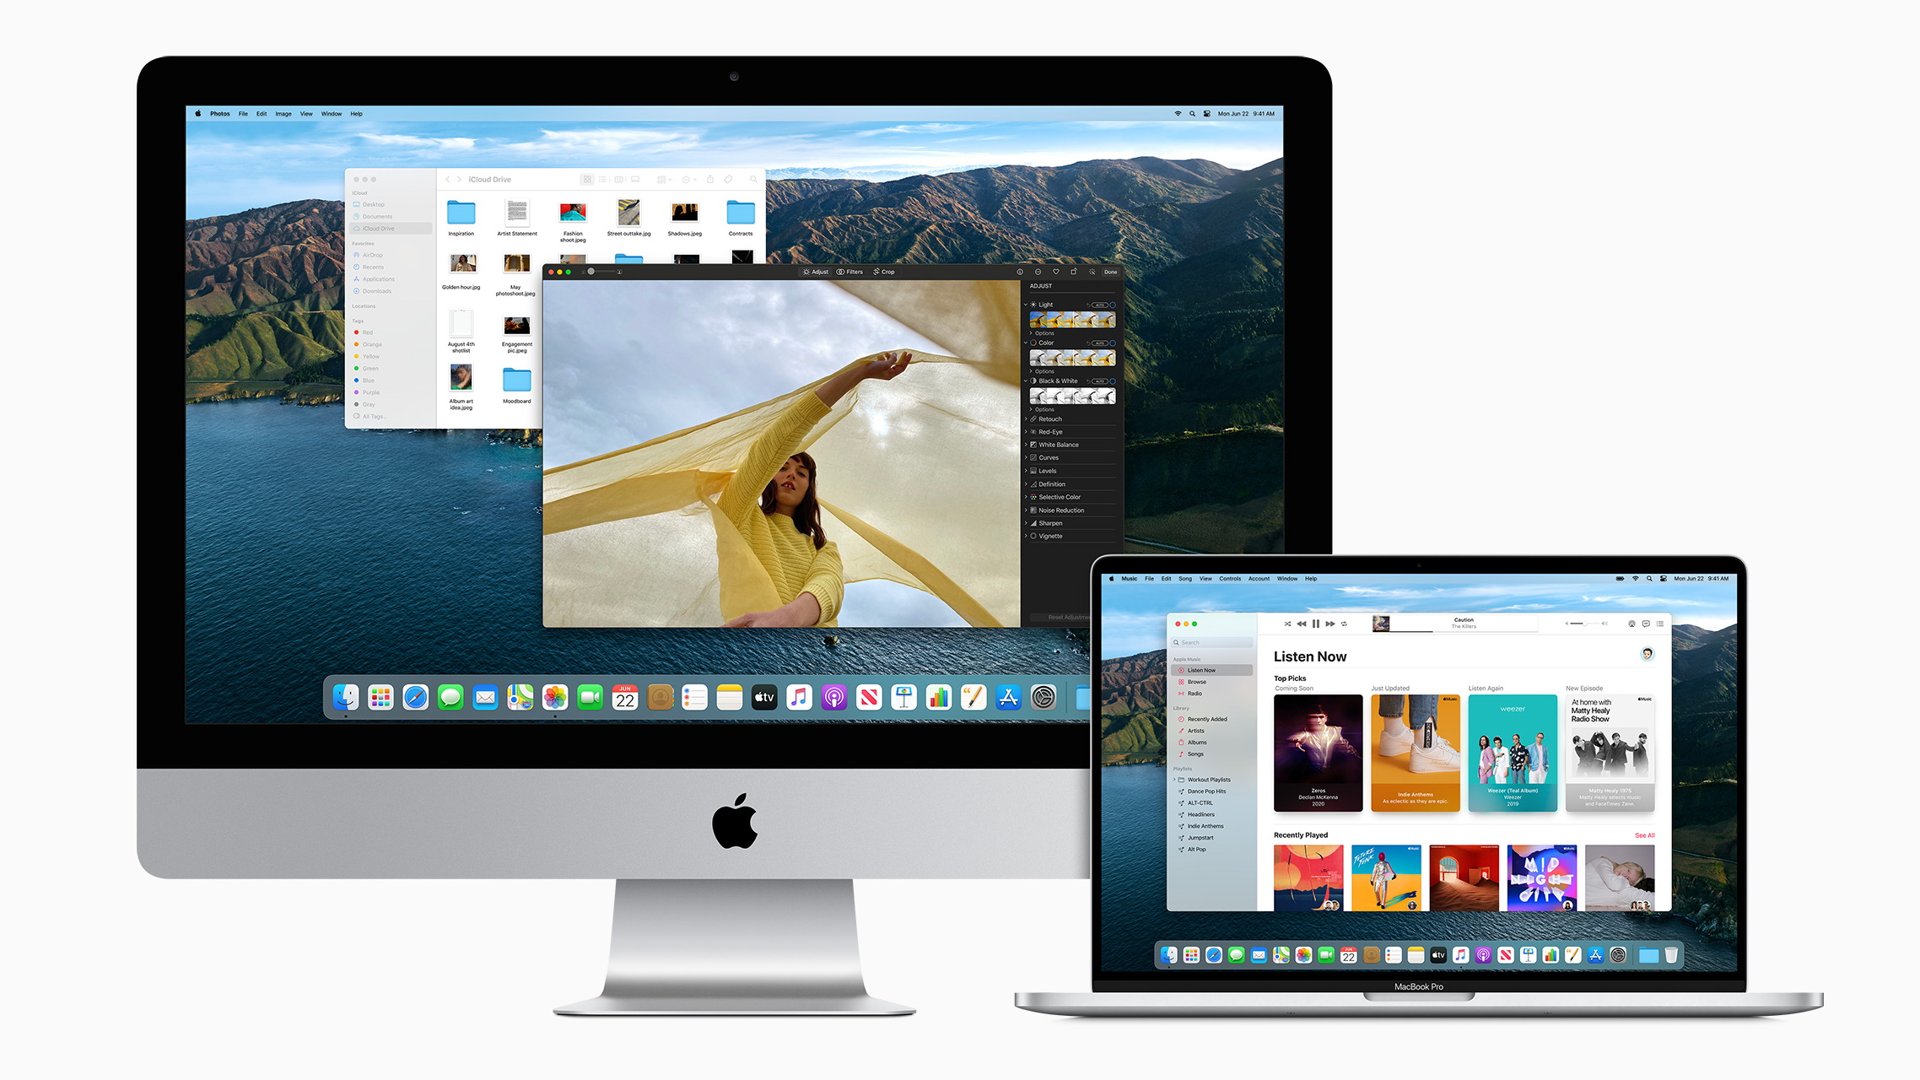 Las Mac con procesadores Apple se beneficiaran de las opciones